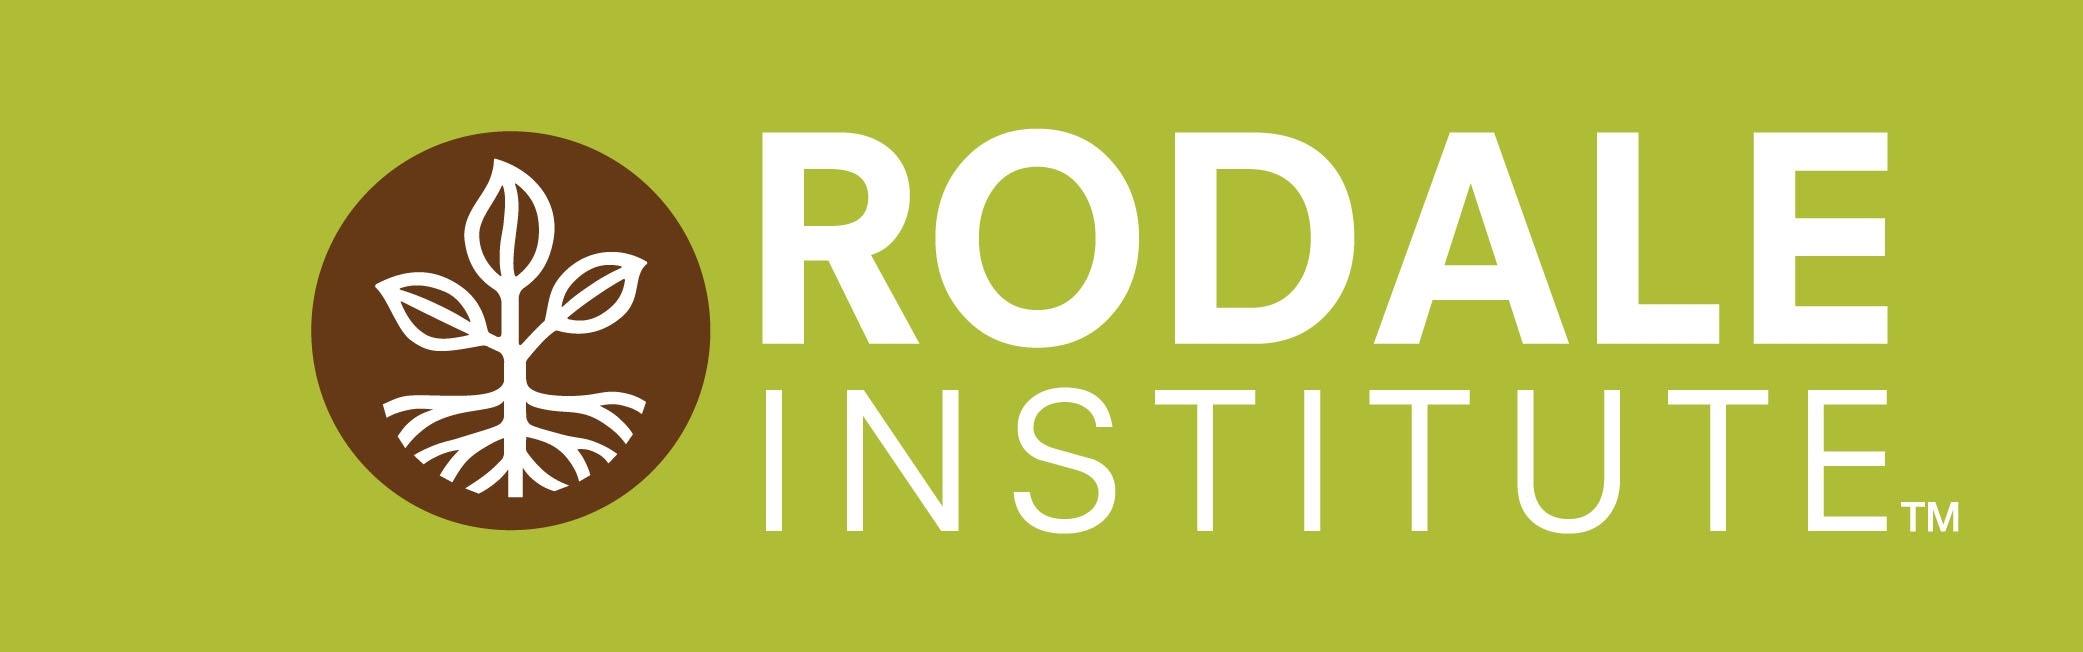  The Rodale Institute 